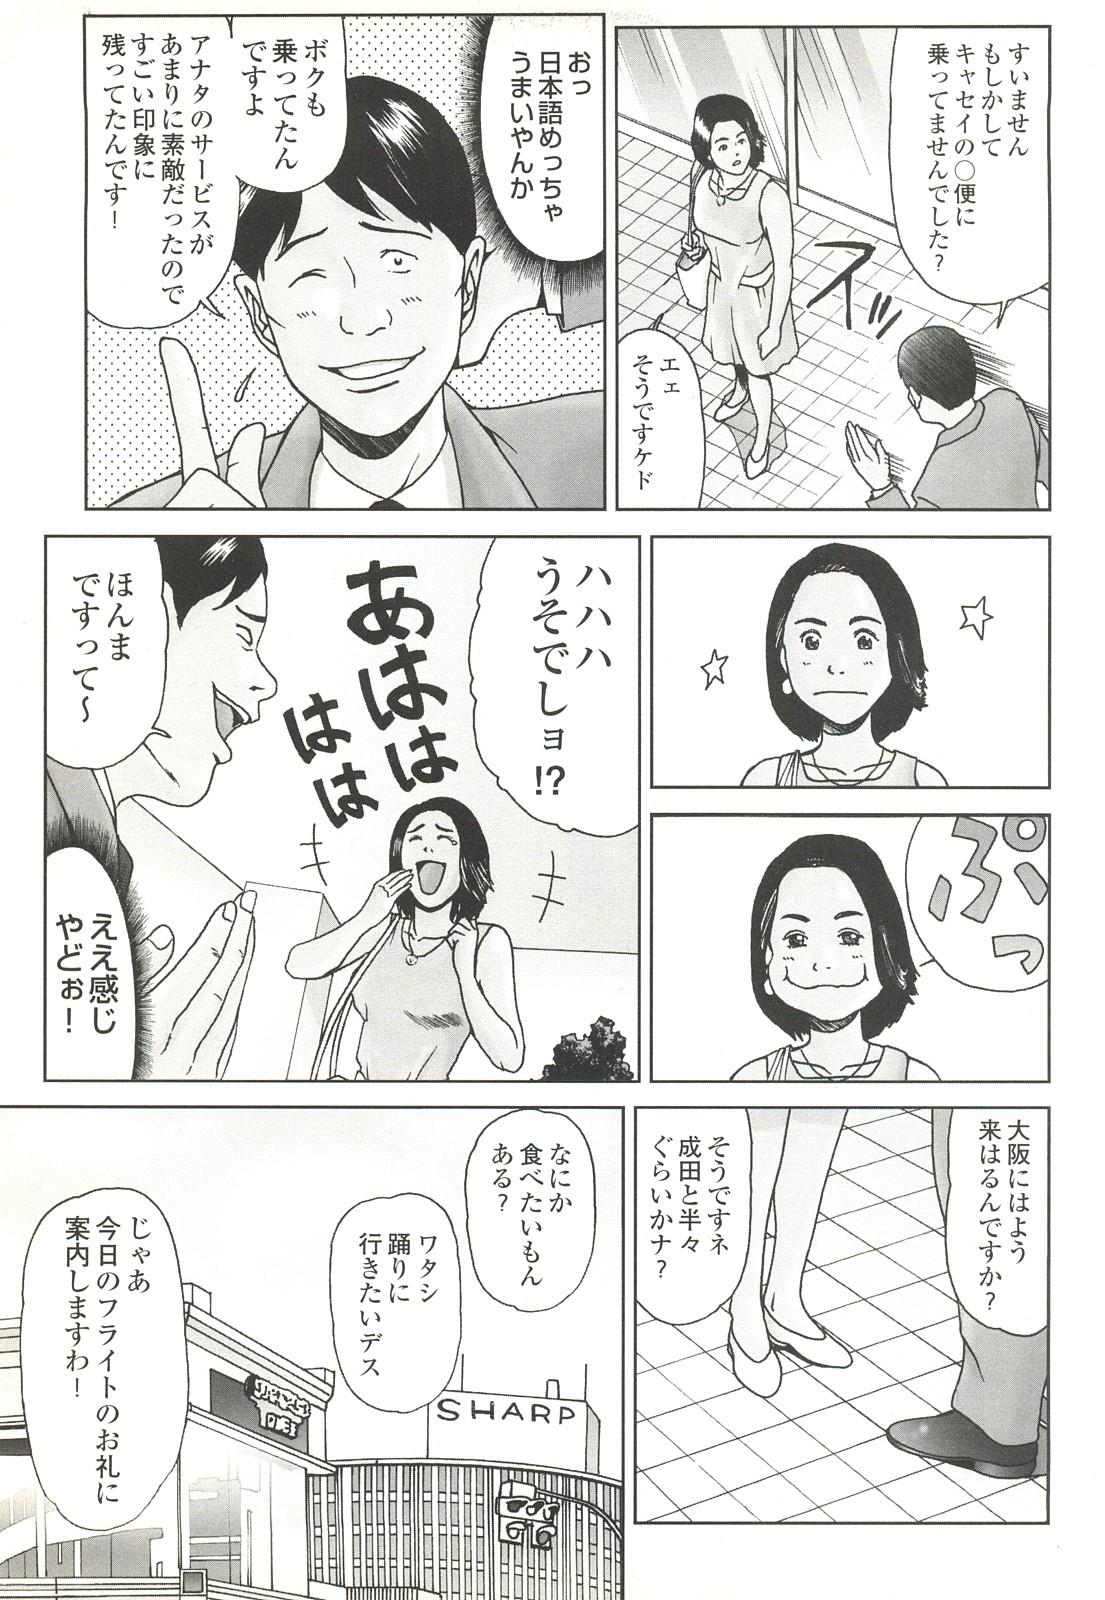 コミック裏モノJAPAN Vol.18 今井のりたつスペシャル号 248